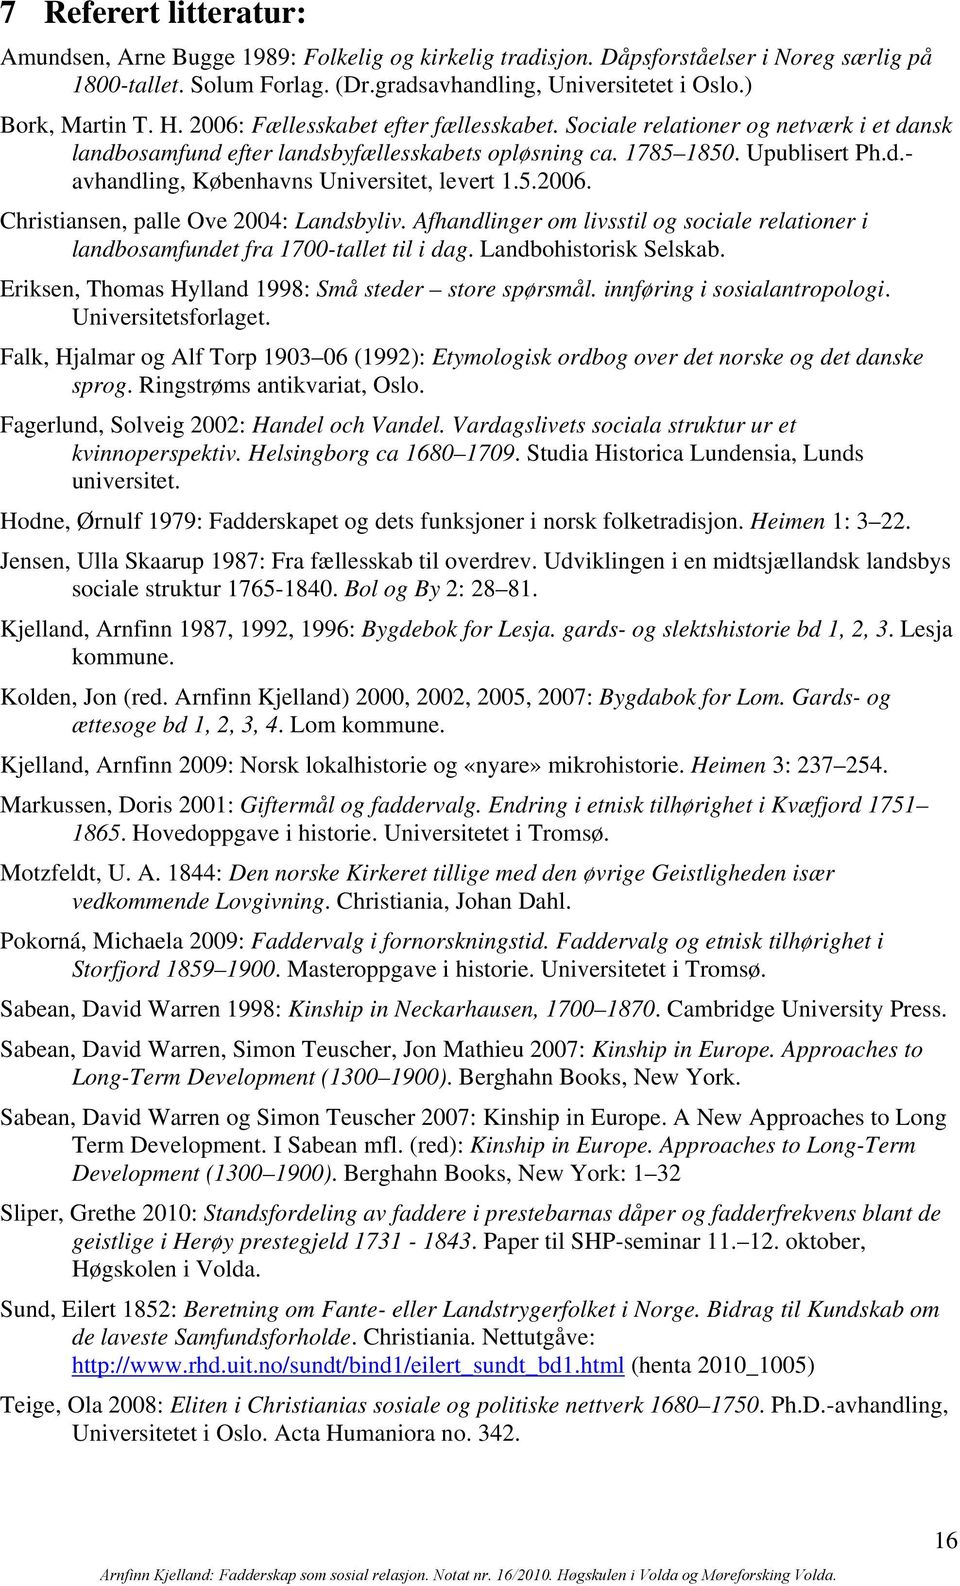 5.2006. Christiansen, palle Ove 2004: Landsbyliv. Afhandlinger om livsstil og sociale relationer i landbosamfundet fra 1700-tallet til i dag. Landbohistorisk Selskab.